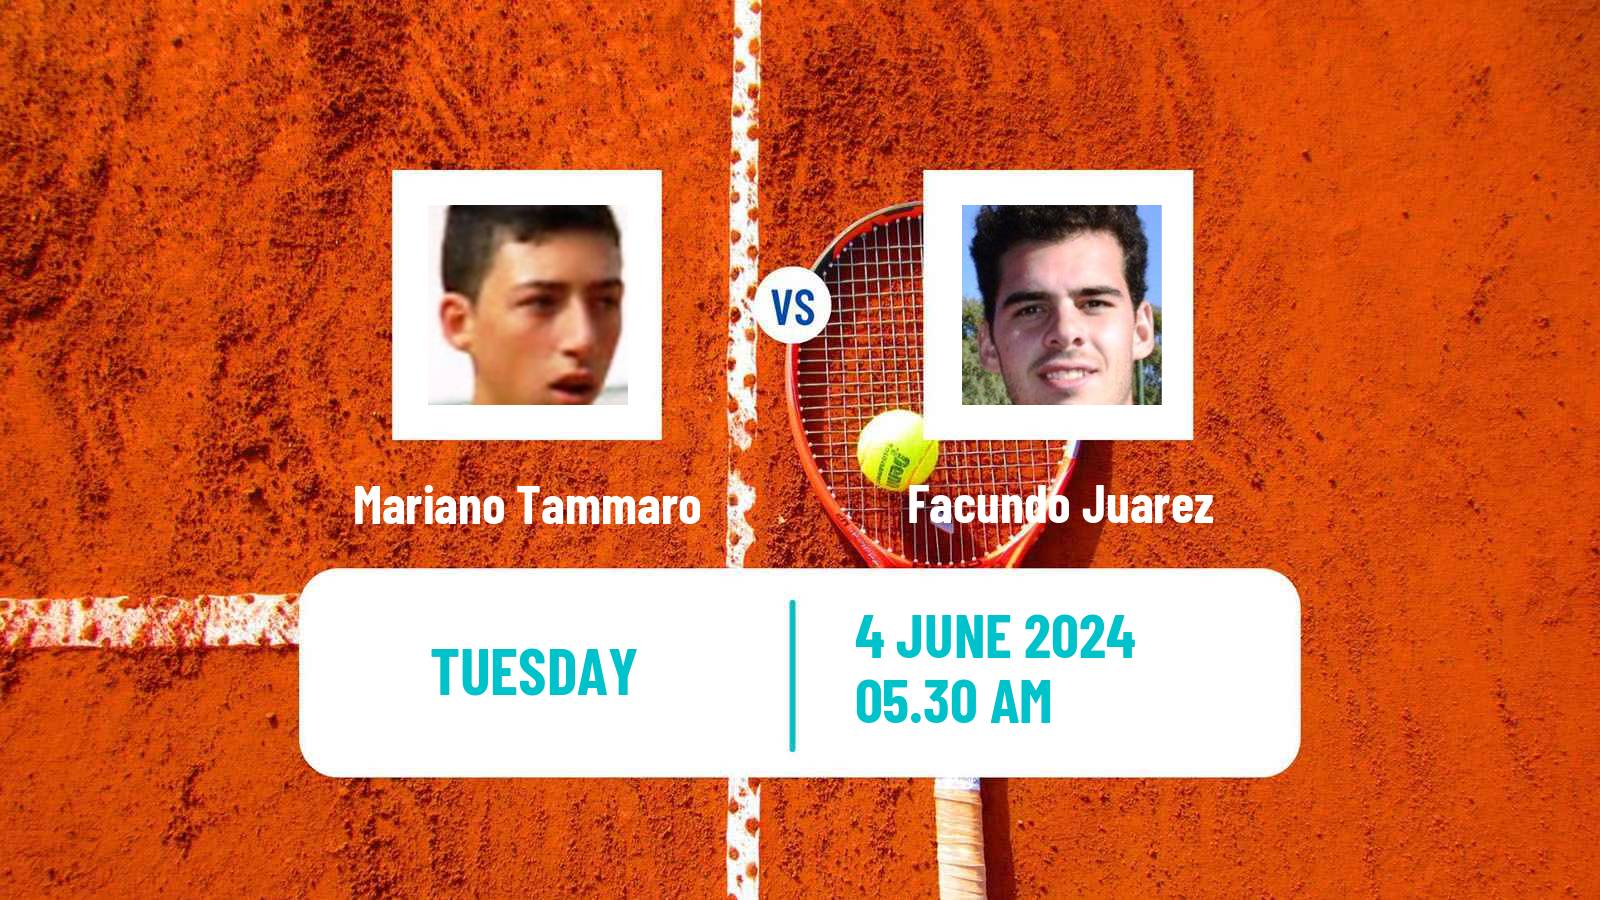 Tennis ITF M15 Caltanissetta Men Mariano Tammaro - Facundo Juarez